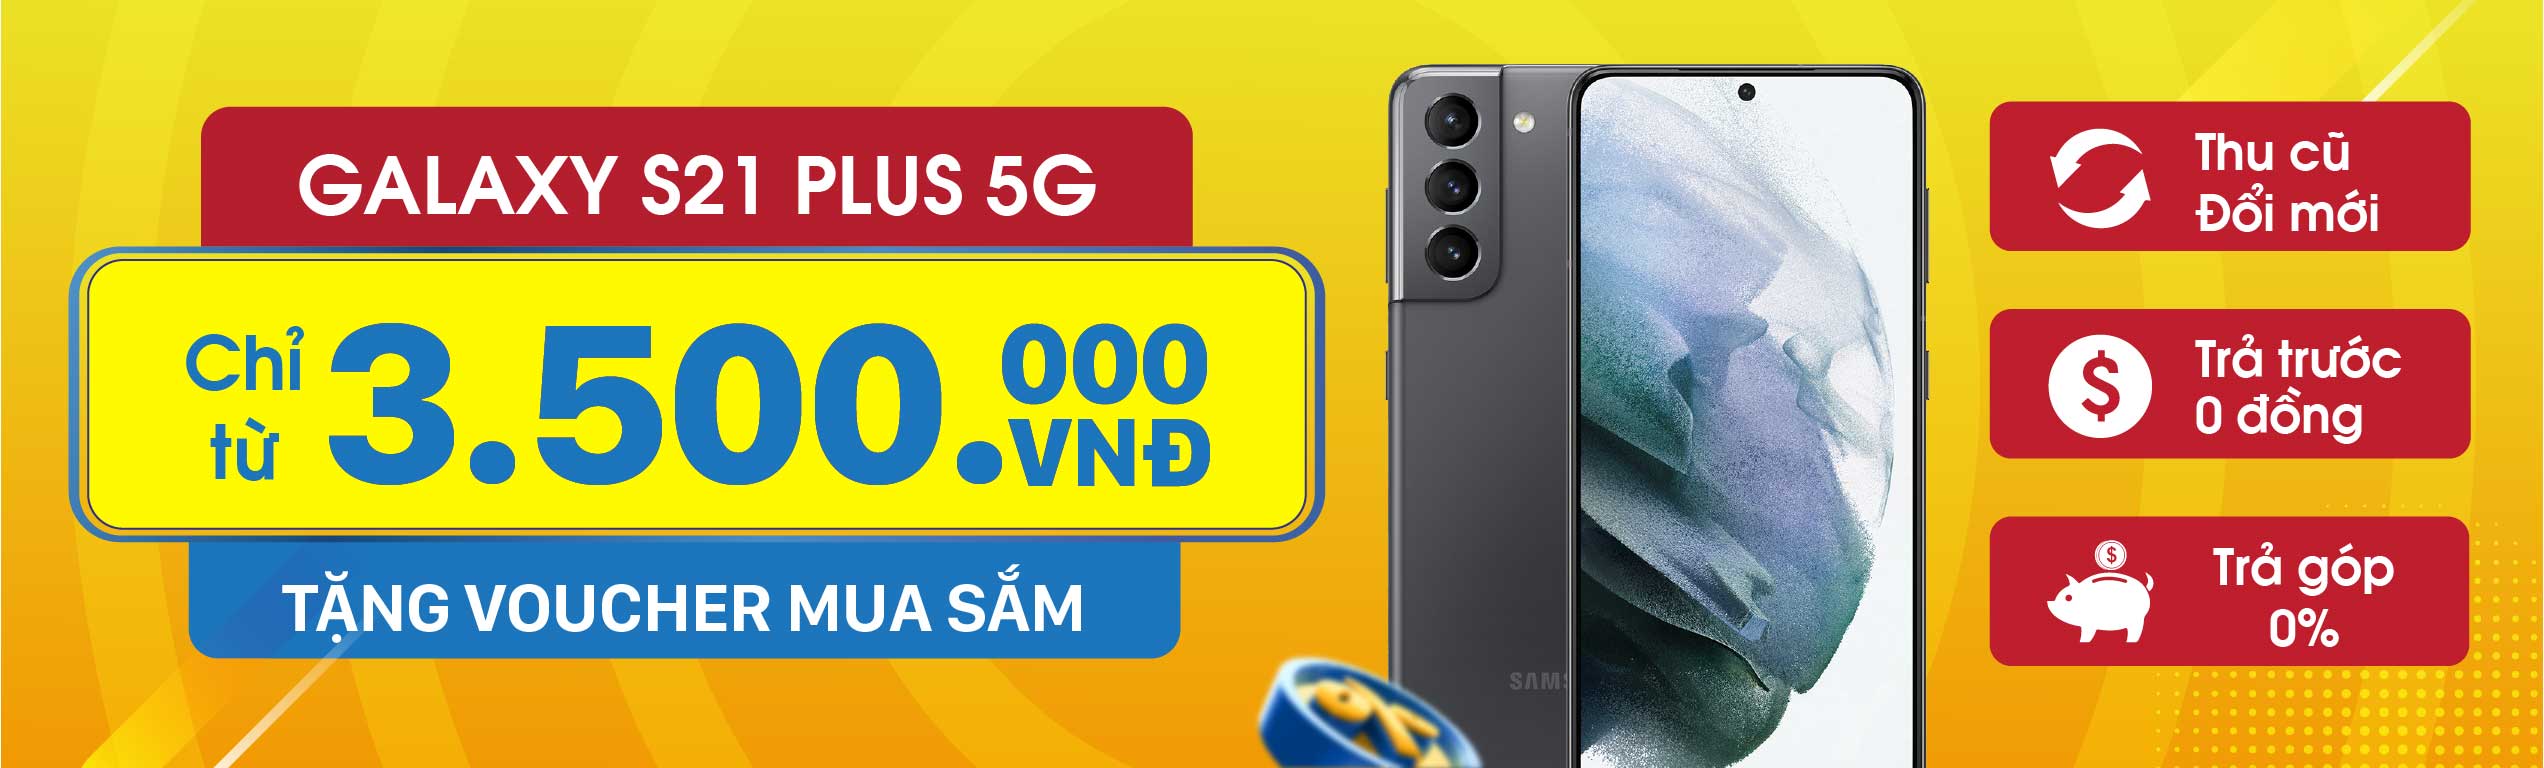 Samsung Galaxy S21 Plus 5G Cũ Giá Rẻ 